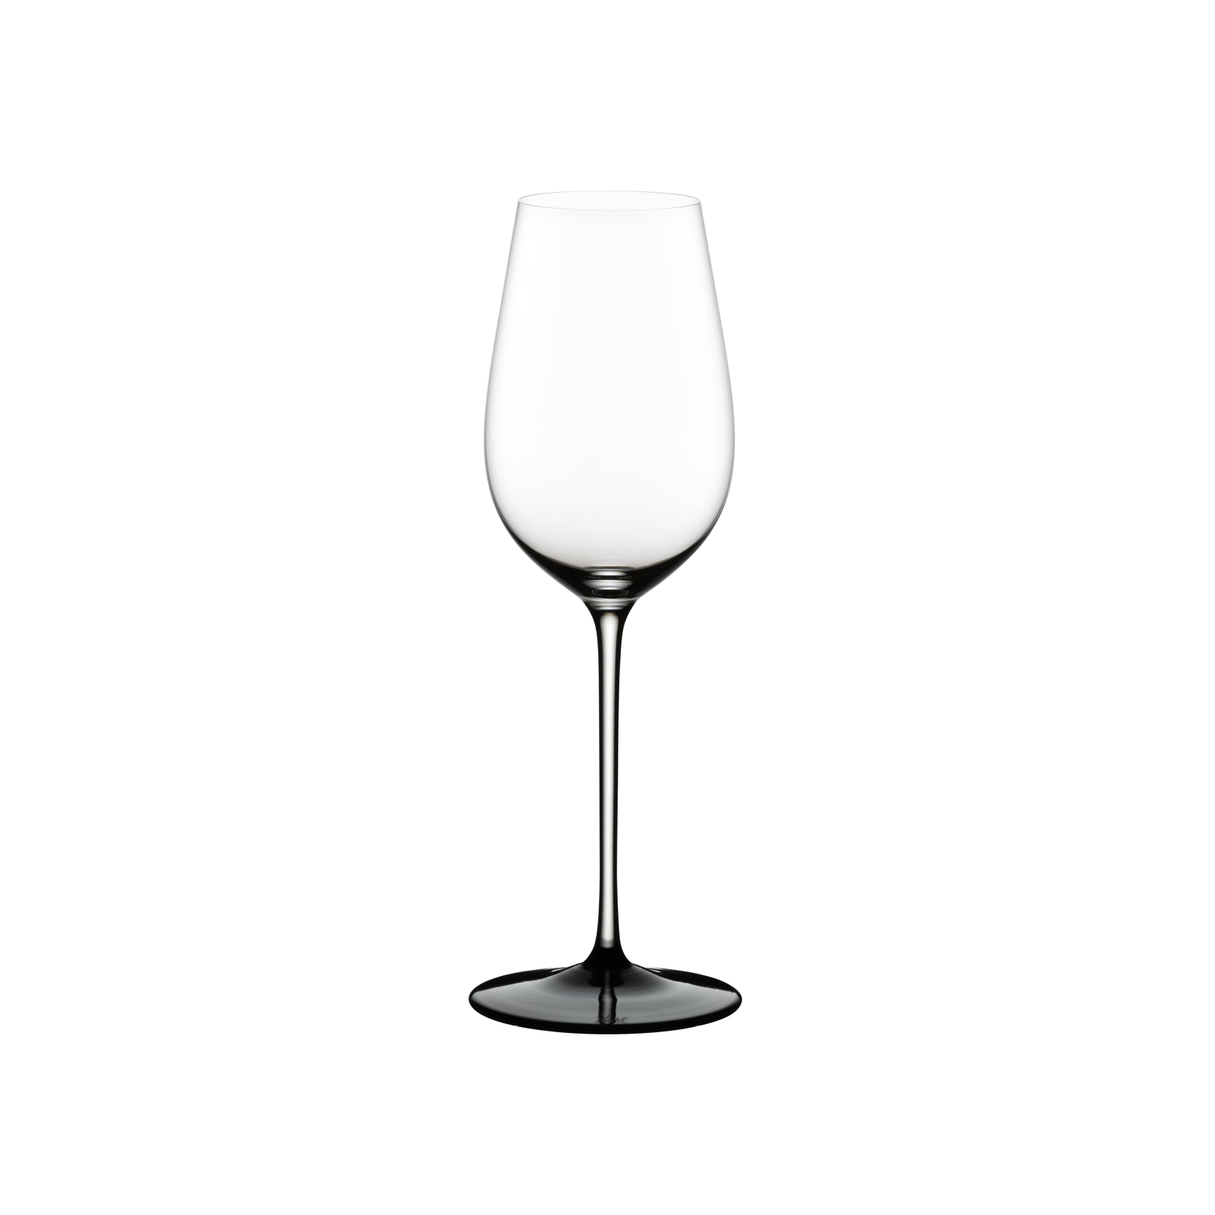 Бокал для белого вина Riedel Sommeliers Black Tie 380 мл бокал для вина комби g125 1z 121 150 мл 6 шт